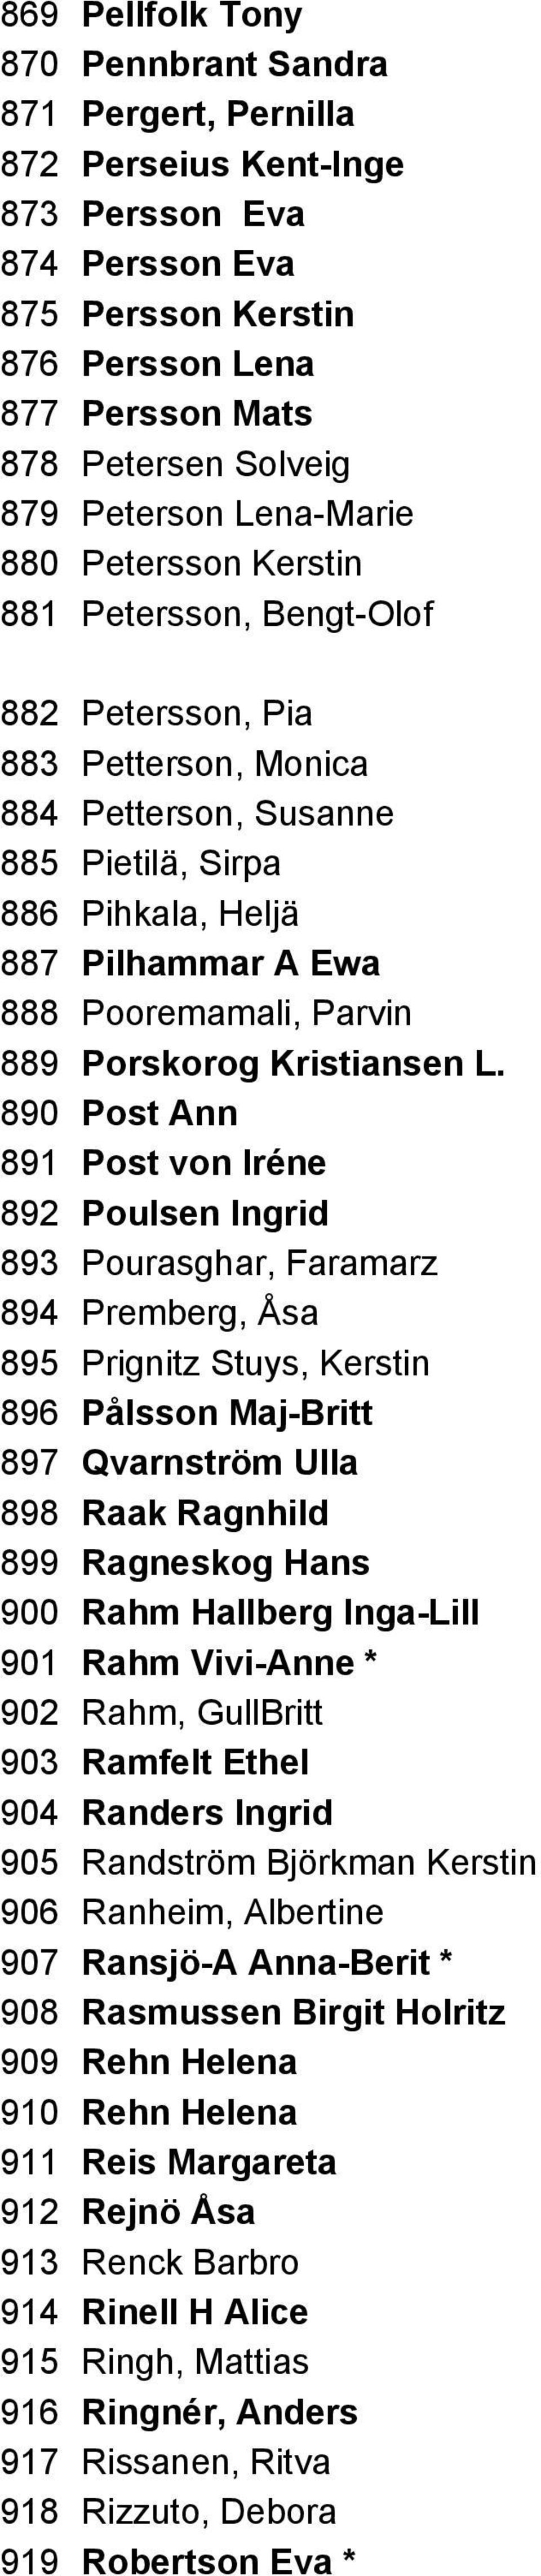 Pooremamali, Parvin 889 Porskorog Kristiansen L.